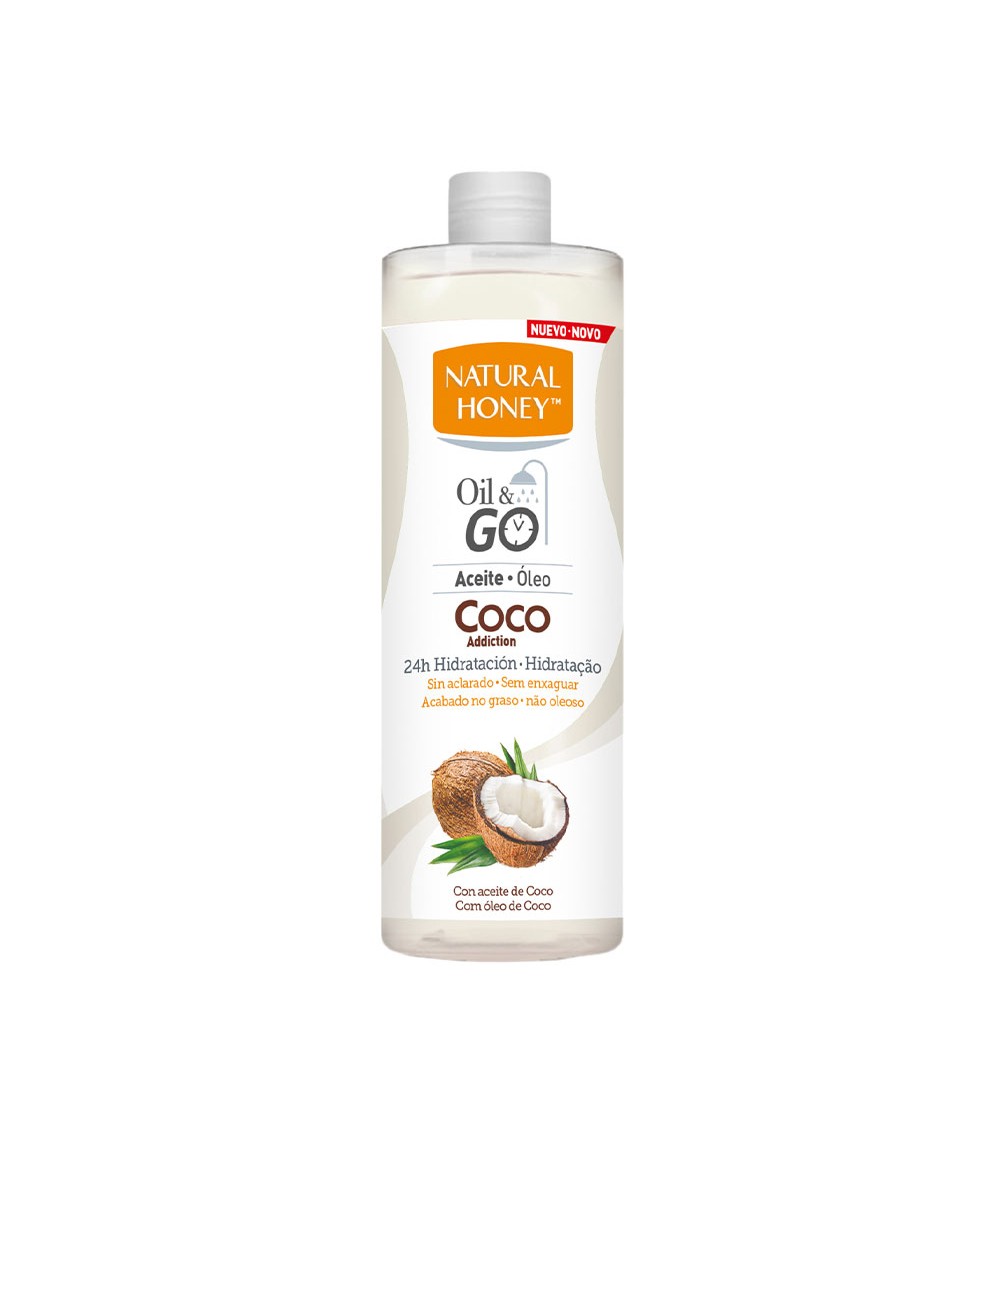 COCO ADDICTION OIL & GO Huile corporelle 300 ml